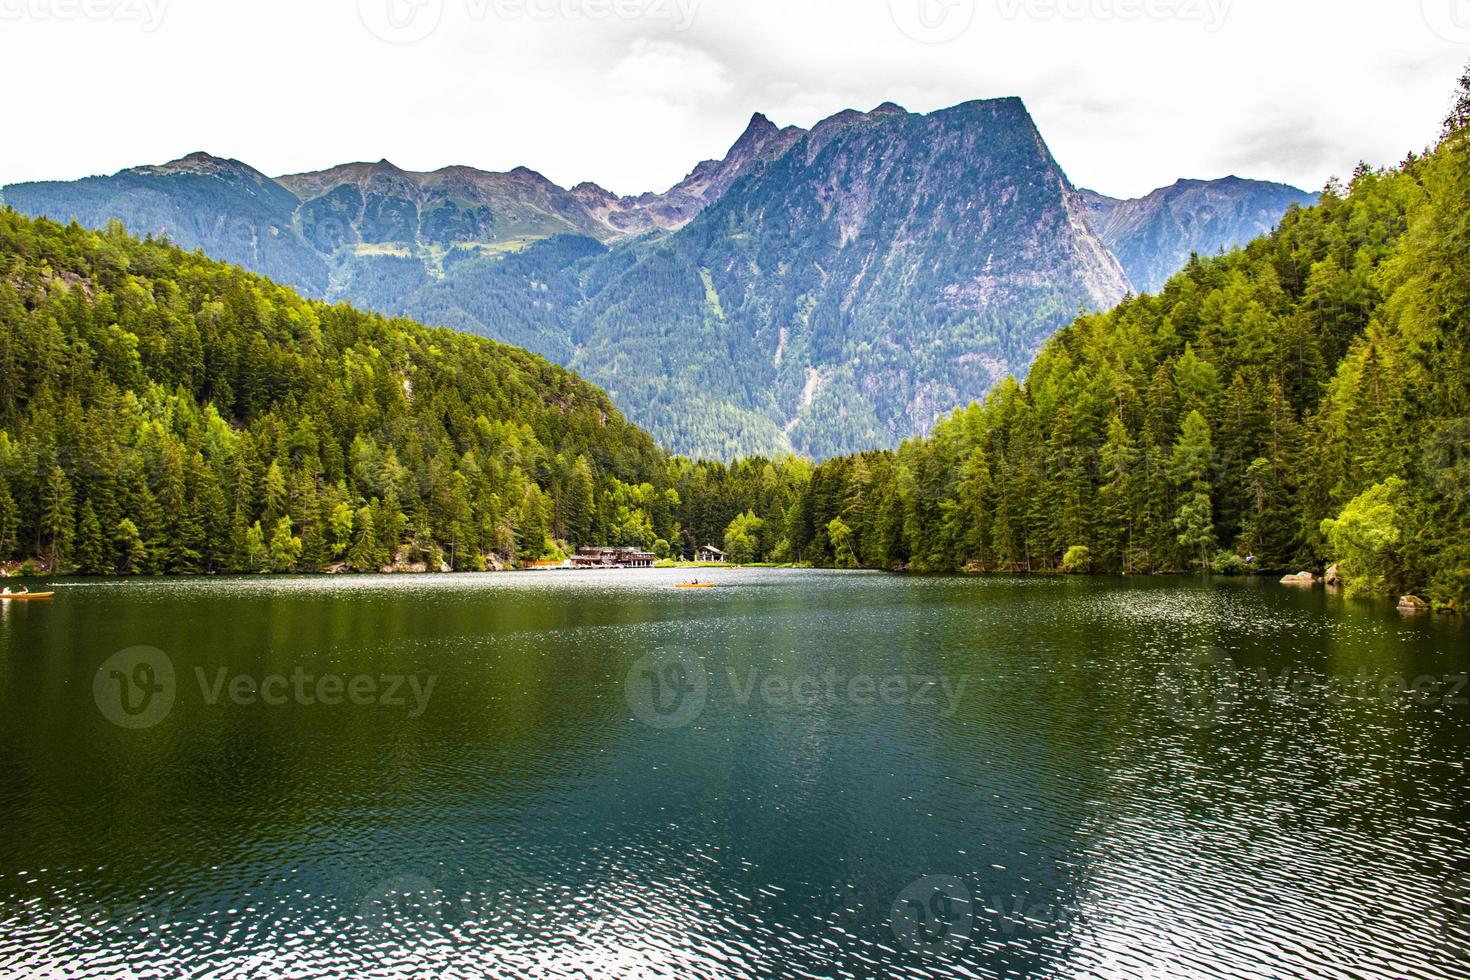 alpin sjö inbäddad mellan toppar och skogar i dalen Otztal foto